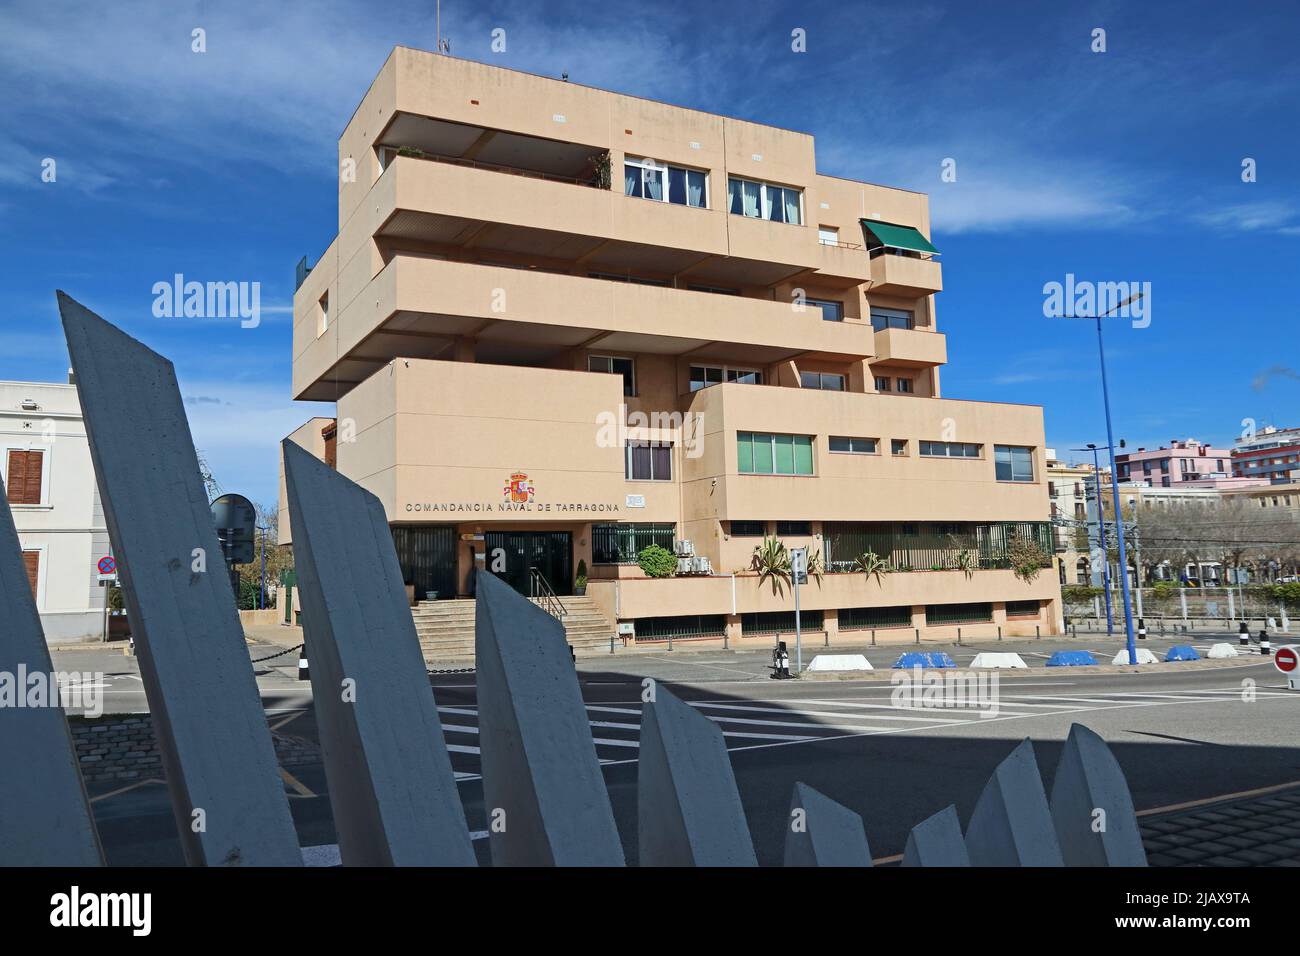 Comandacia Naval de Tarragona building, Tarragona Stock Photo